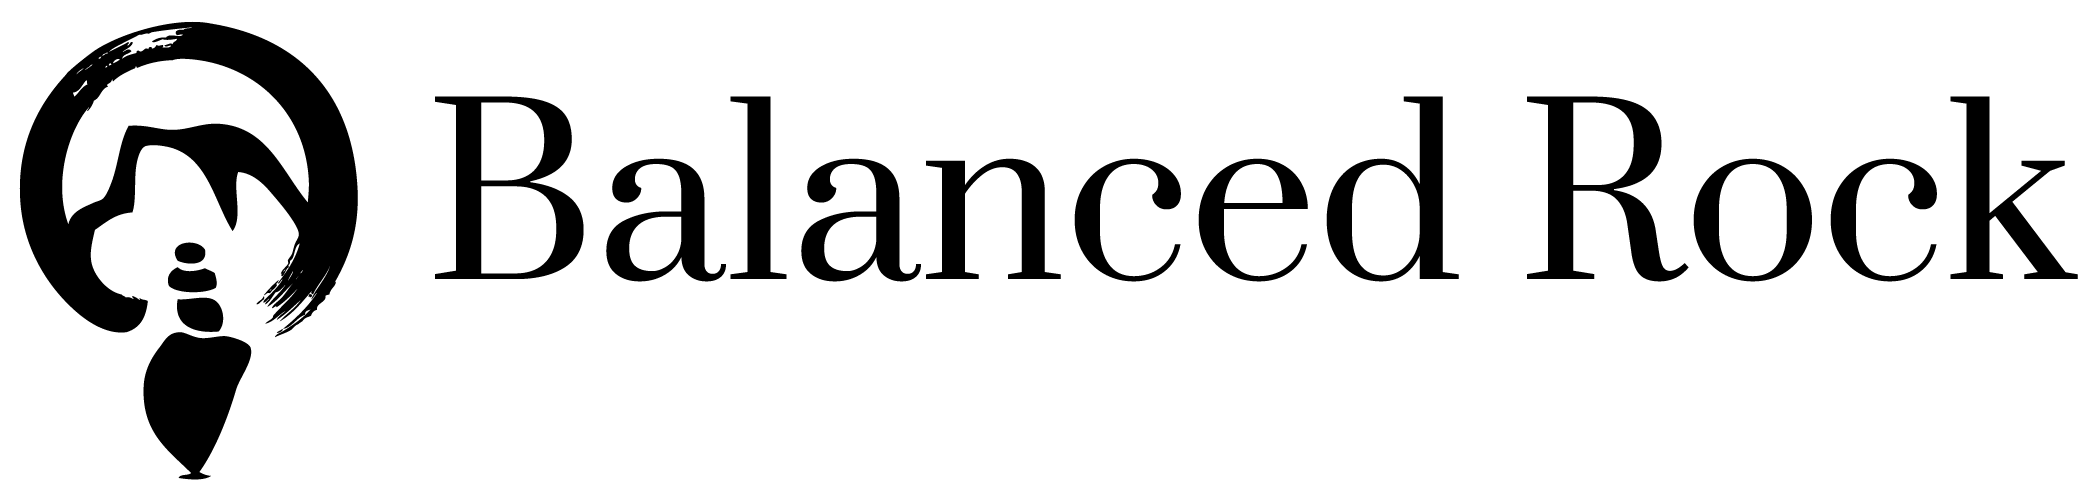 Balanced Rock Logo Black (1).png